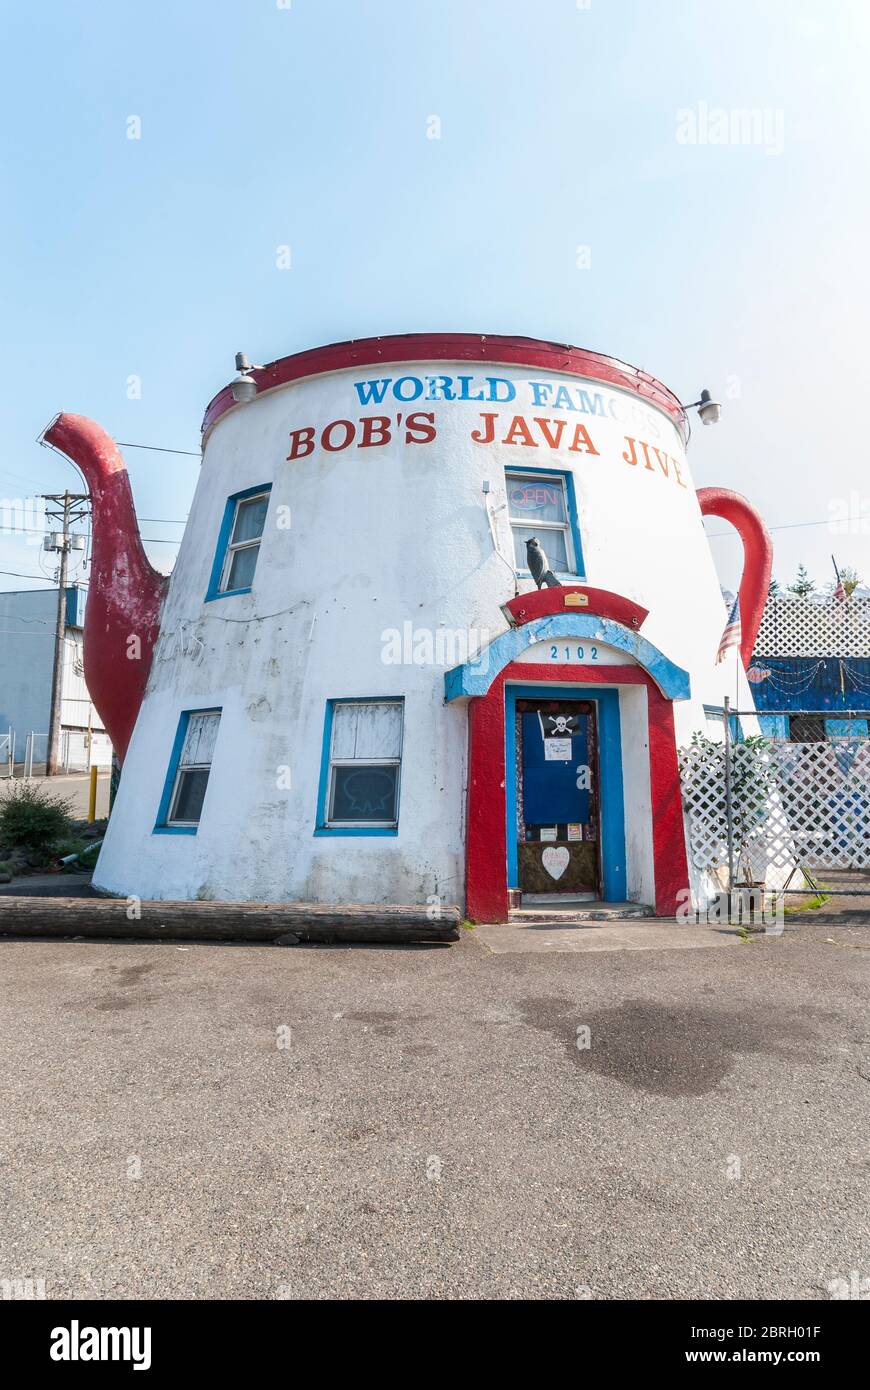 Famoso in tutto il mondo Bob's Java Jive, ristorante a forma di caffettiera a forma di caffettiera a forma di pentola, al 2102 South Tacoma Way, a Tacoma Washington. Foto Stock